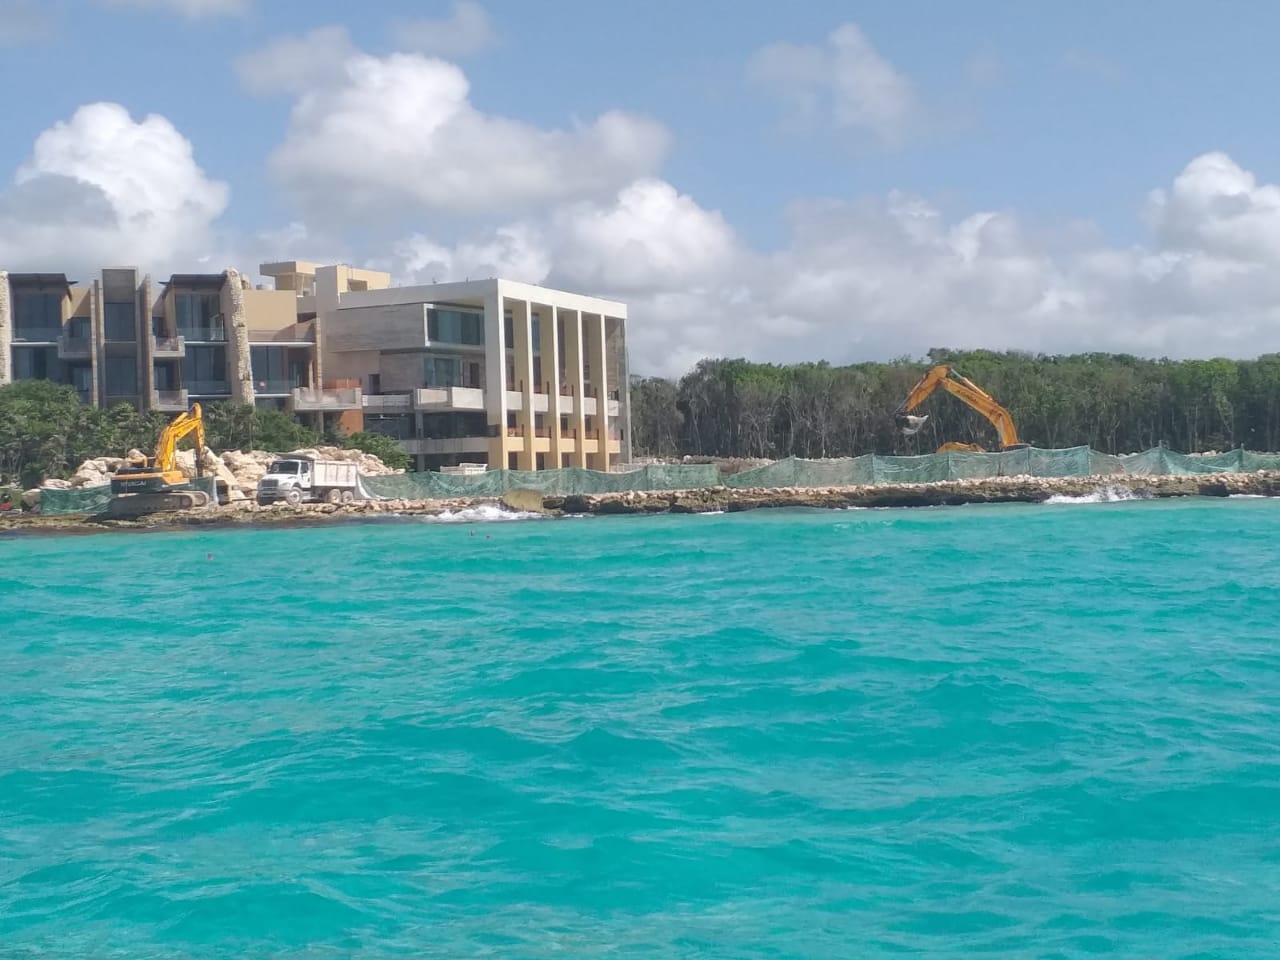 Grupo Xcaret pone en peligro arrecifes en la Riviera Maya, alertan